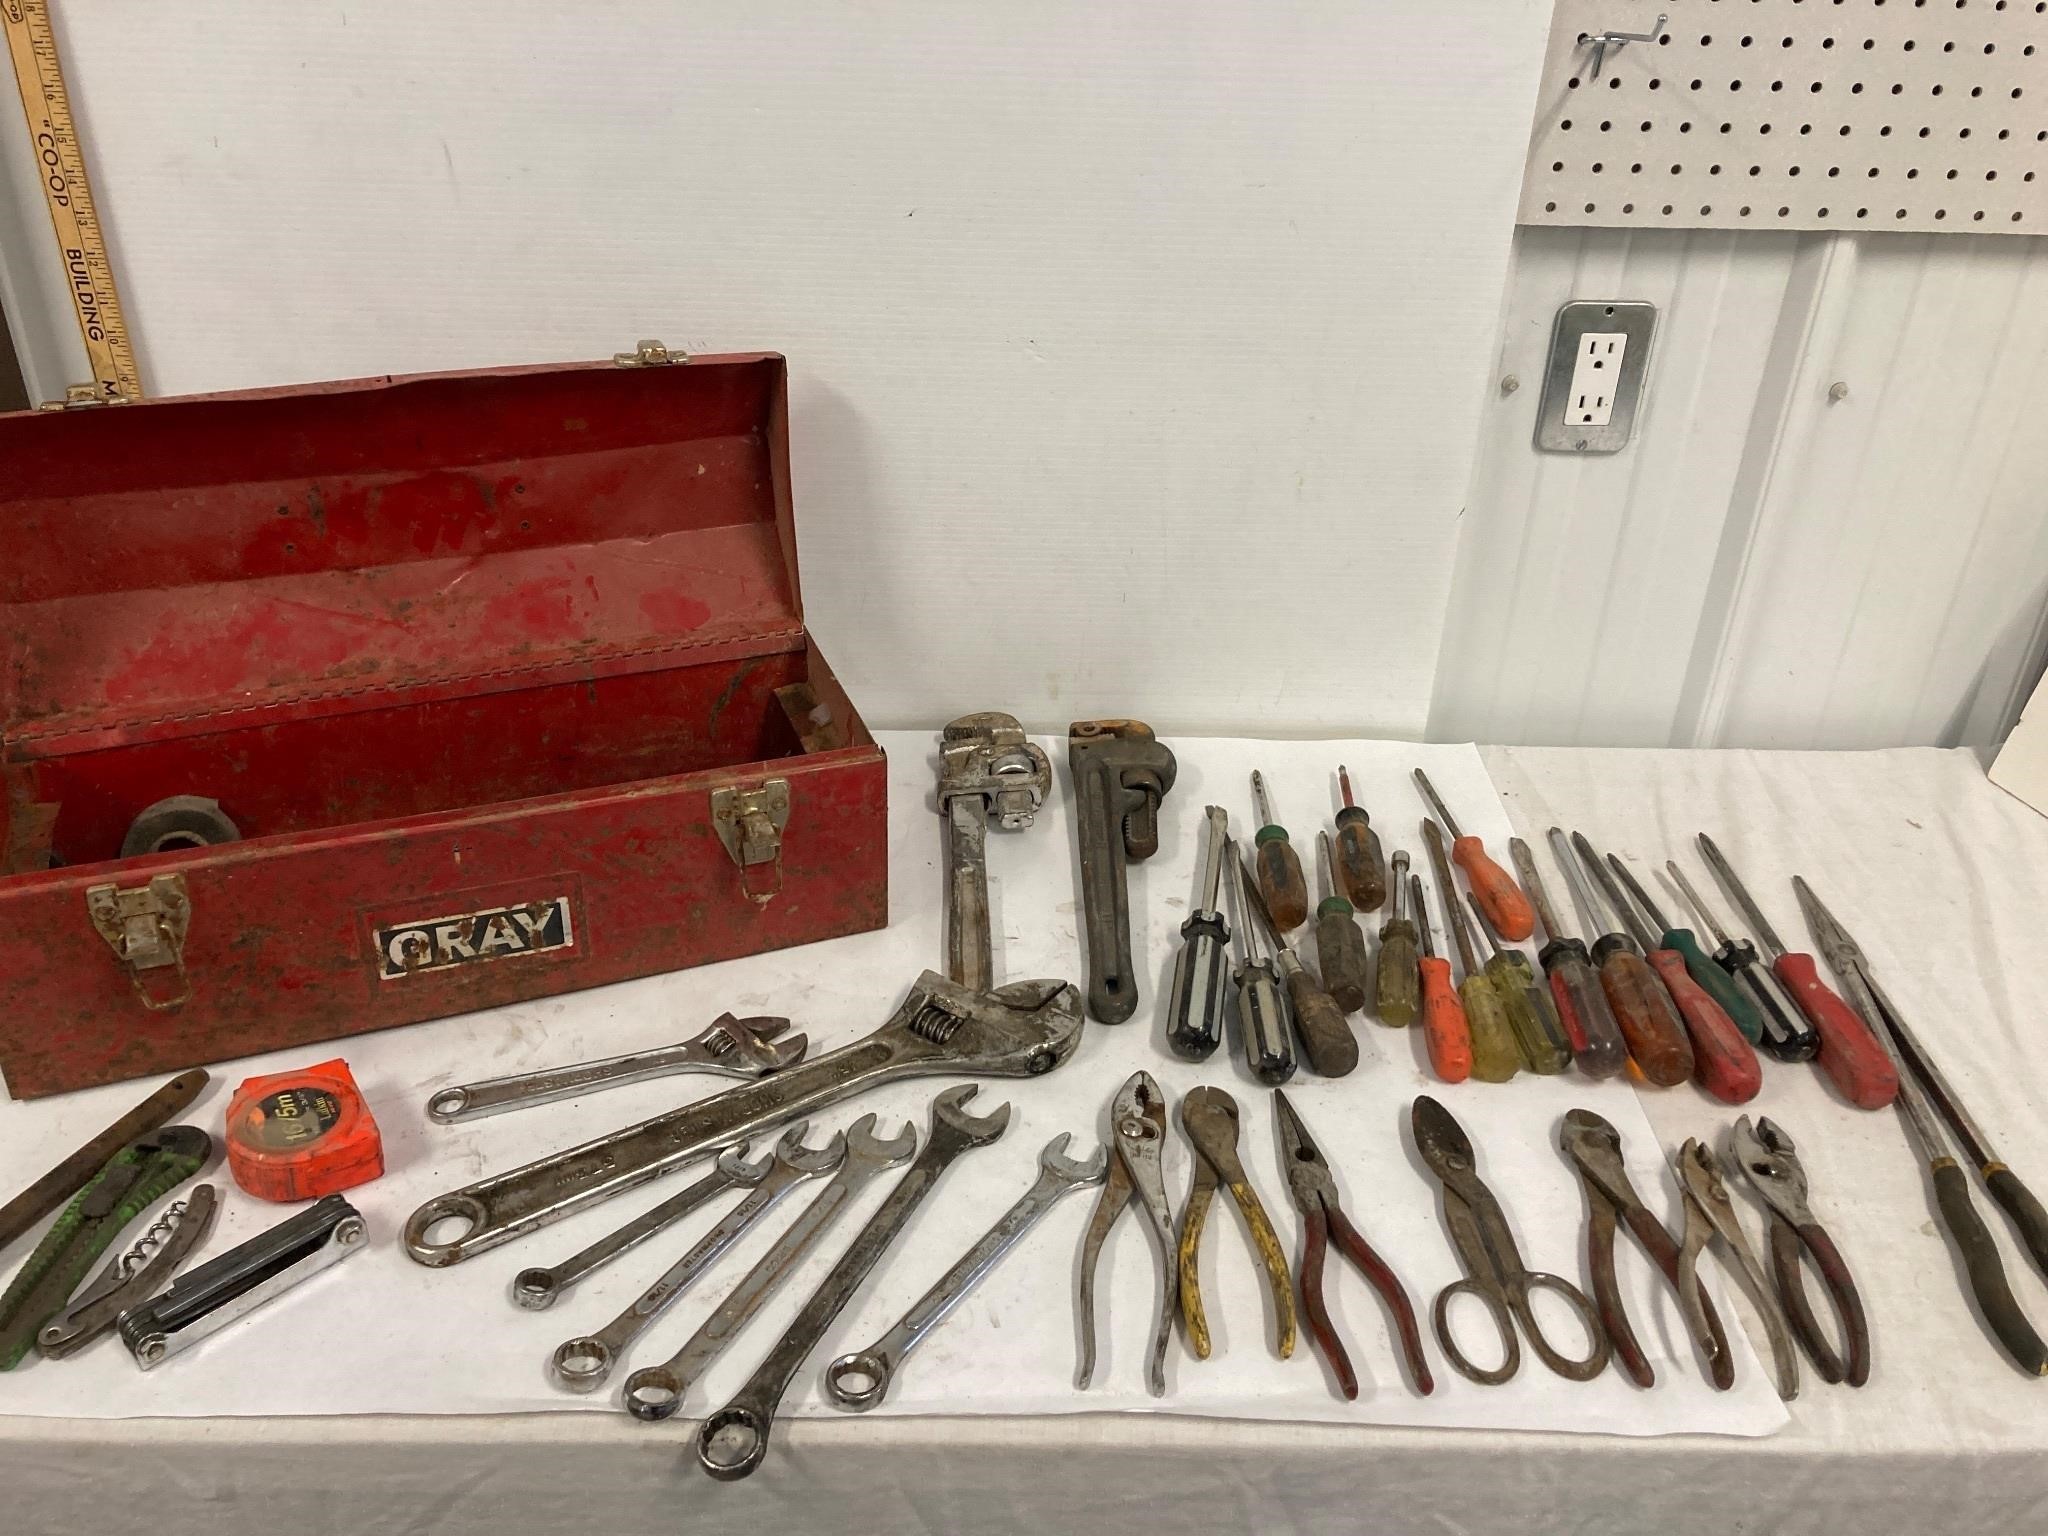 Tool box full of tools.